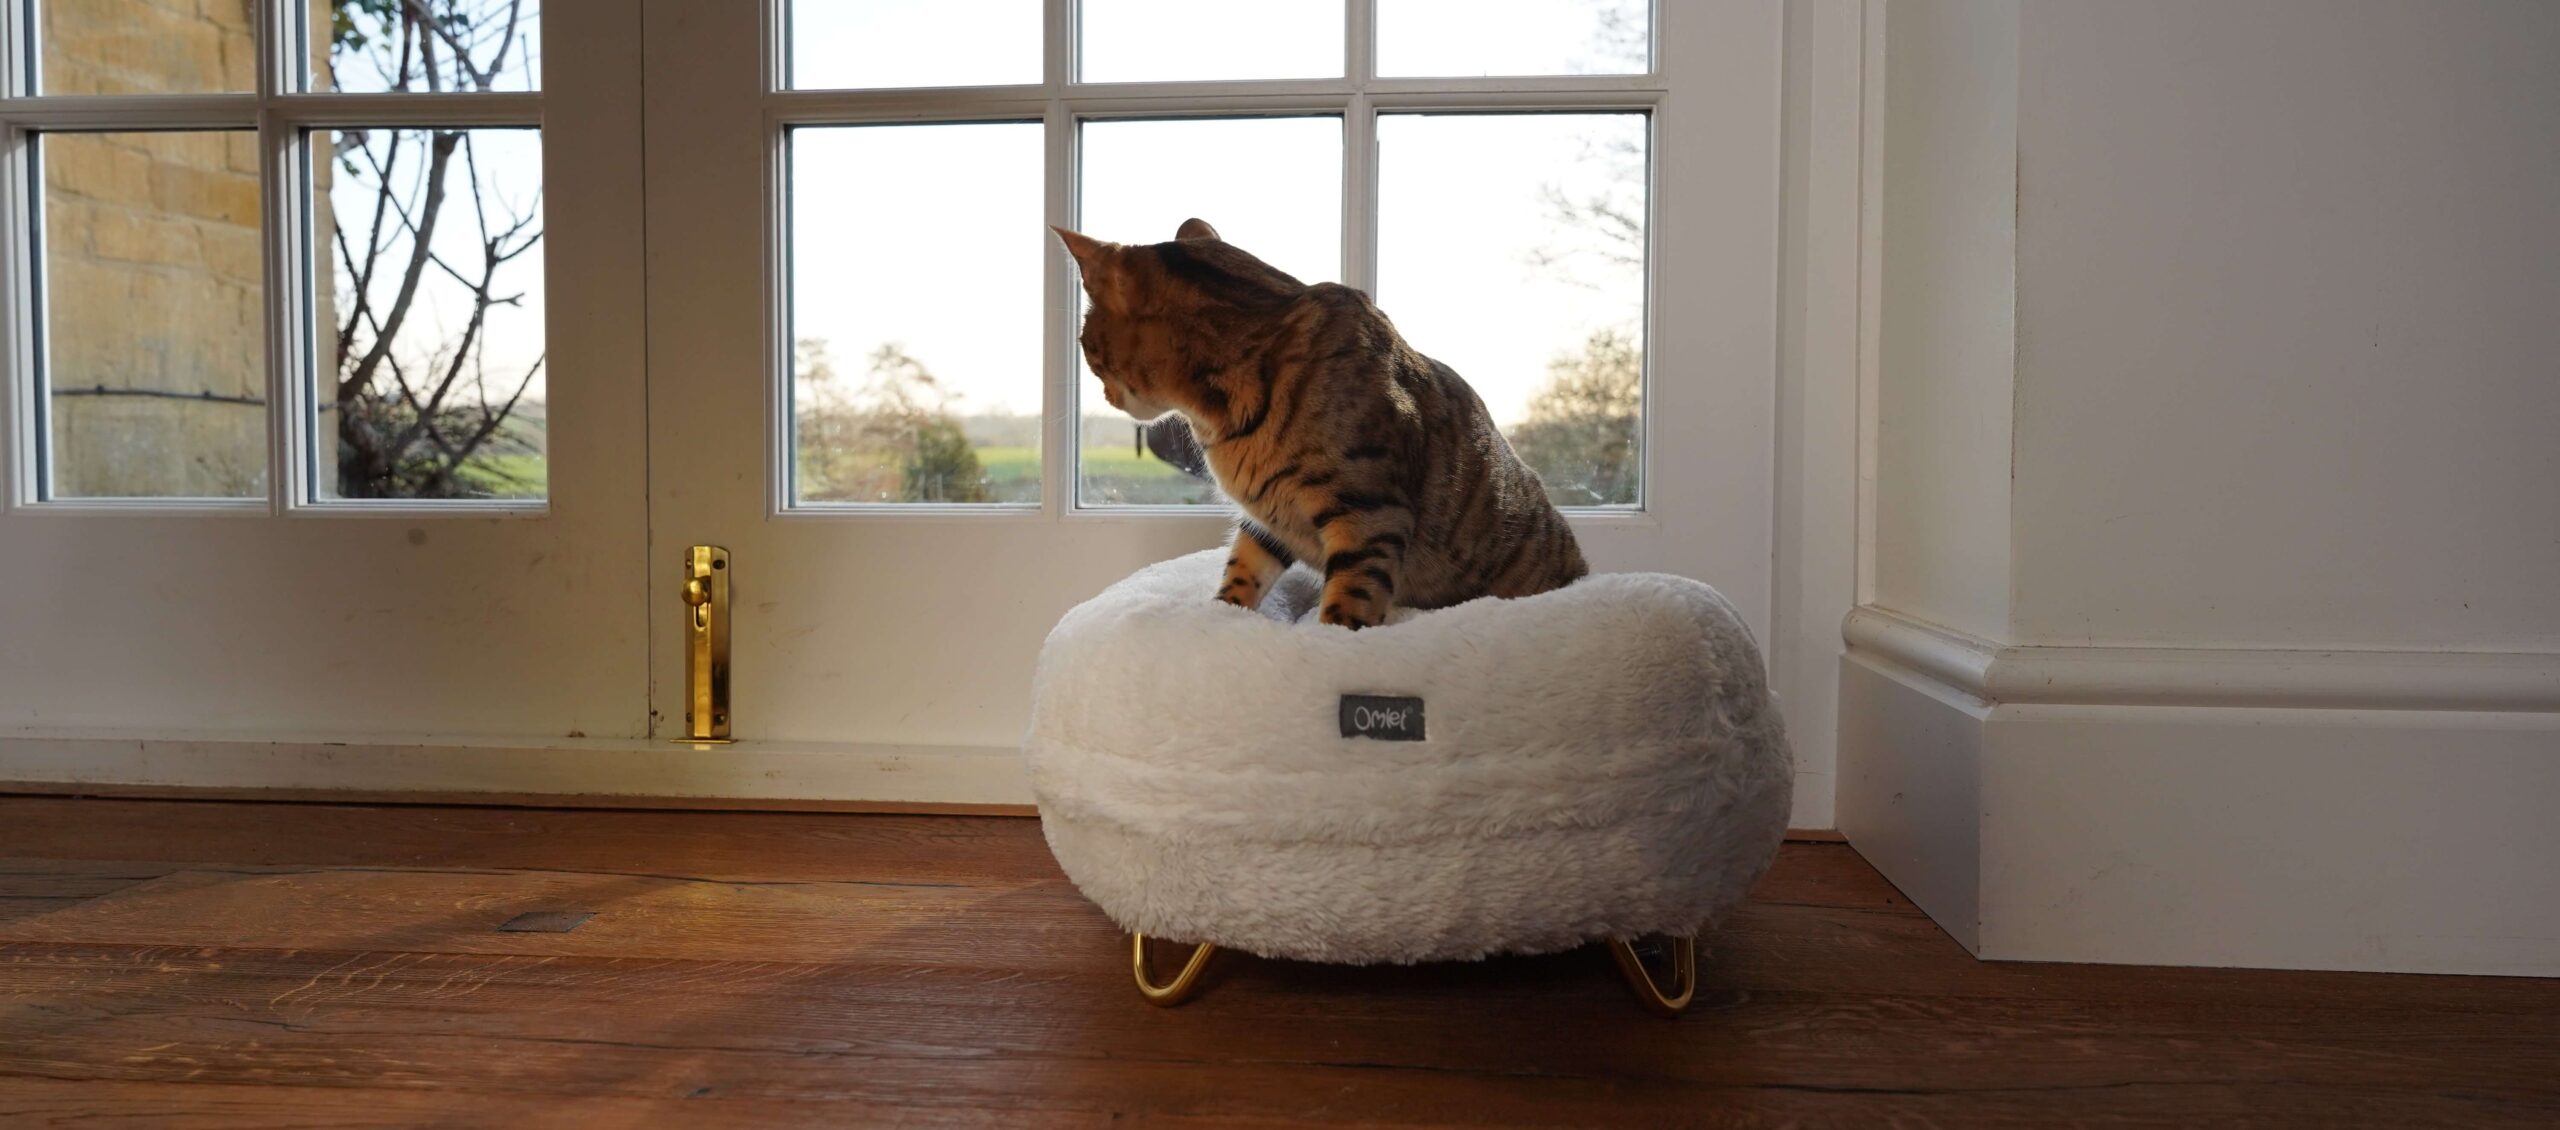 En katt sitter på kattbädden Maya Donut och tittar ut genom fönstret